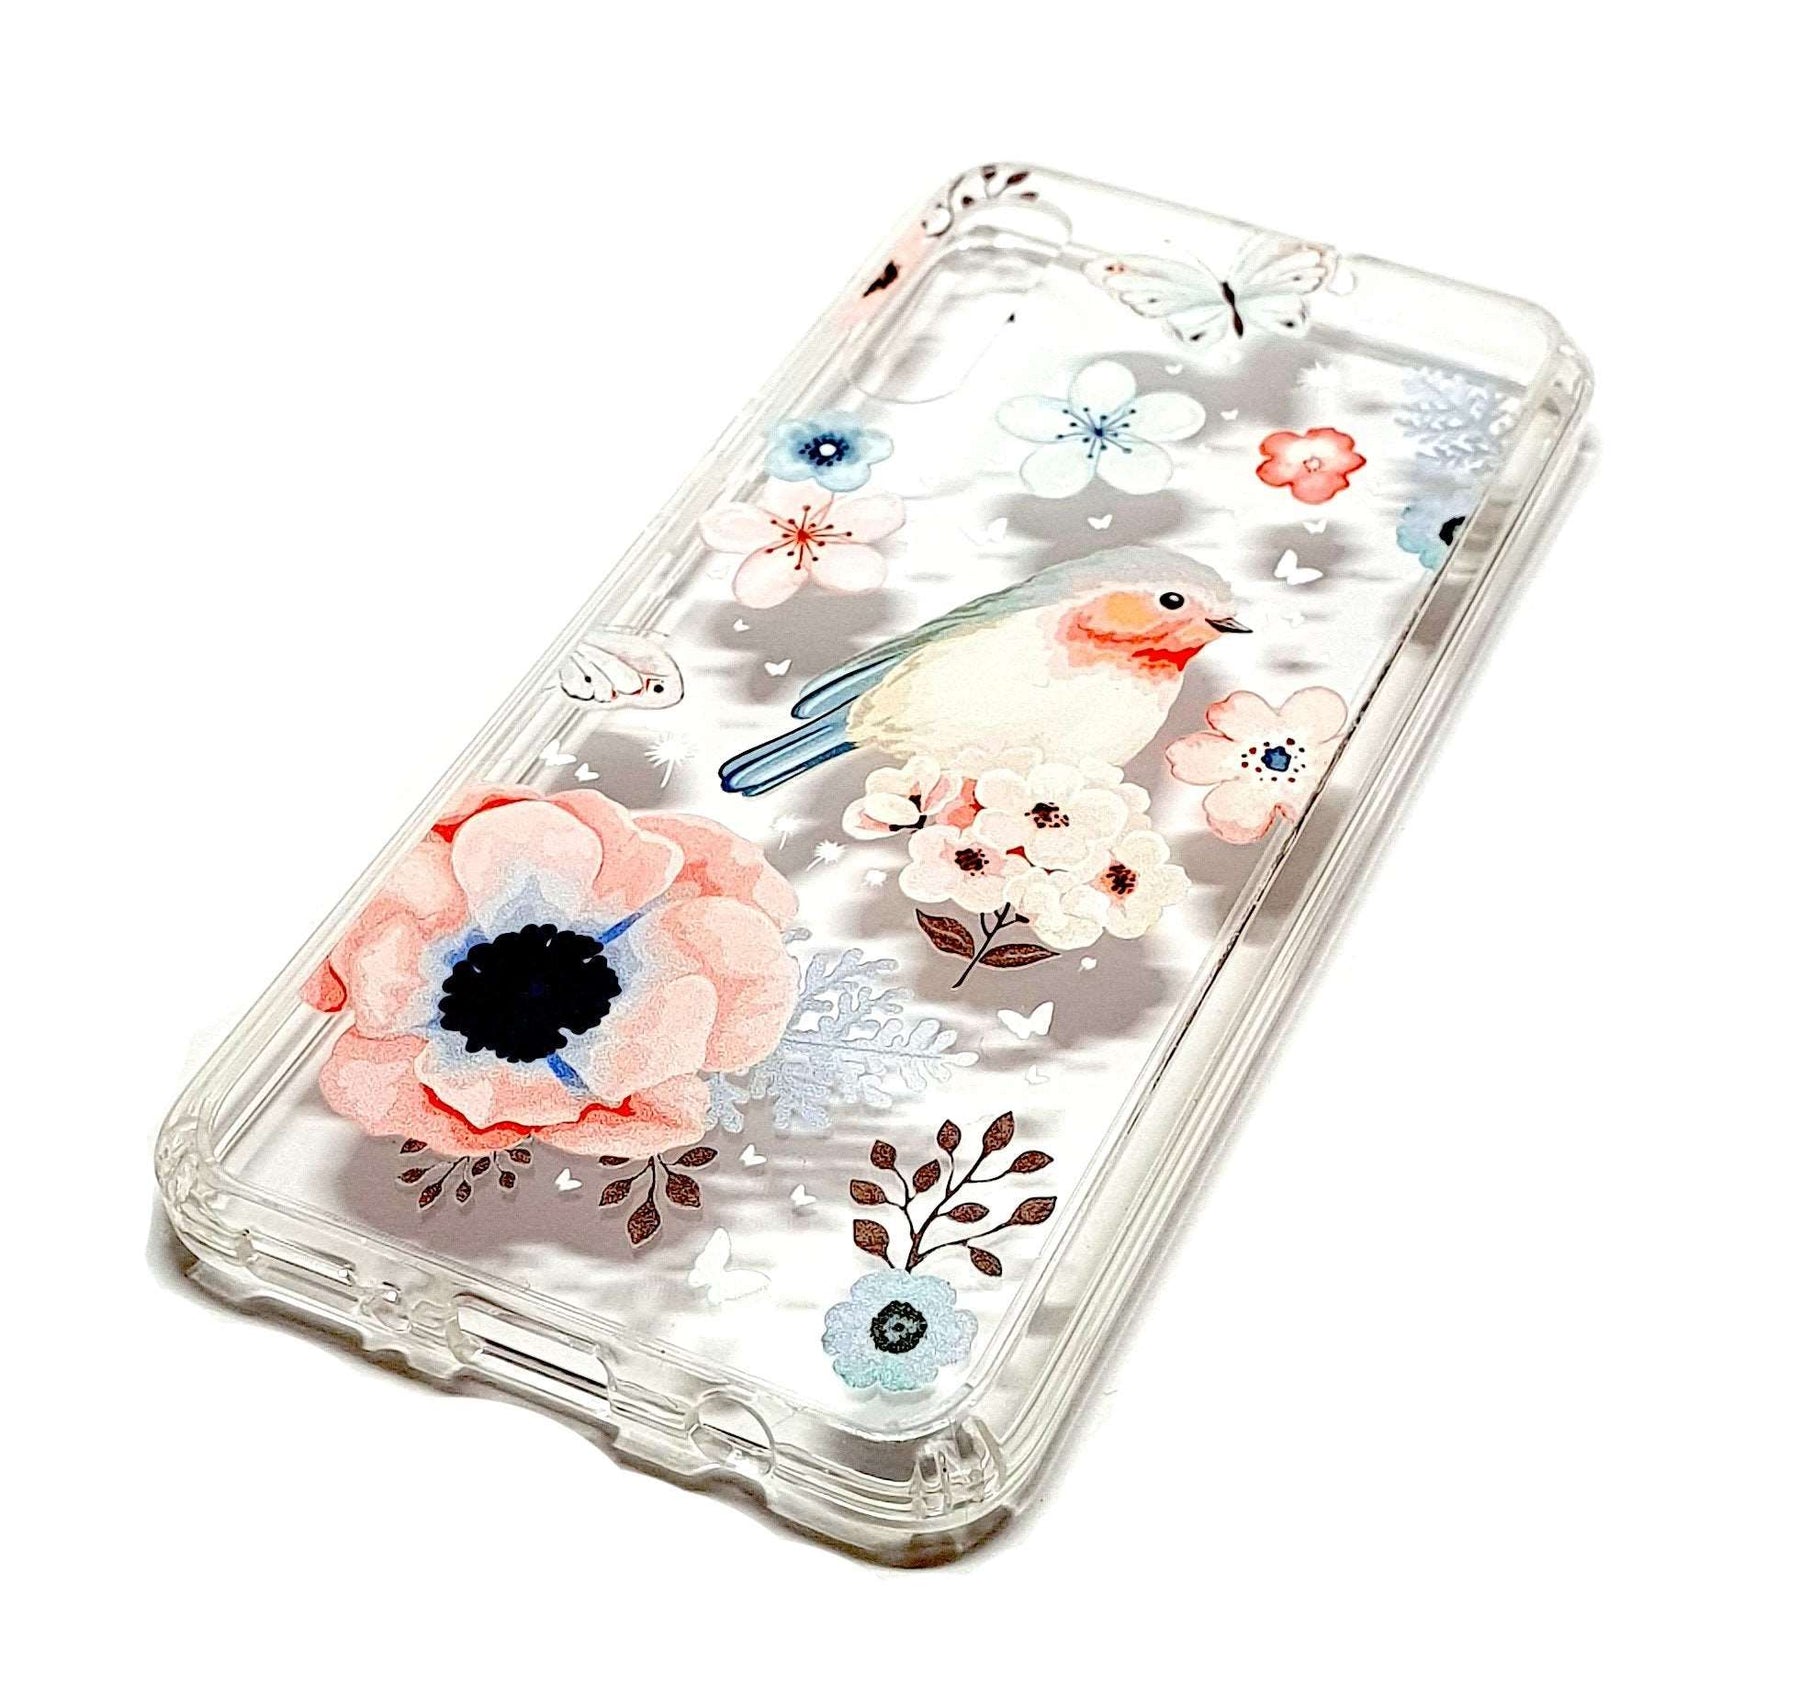 Samsung A30 / A50 decorative clear transparent phone case robin